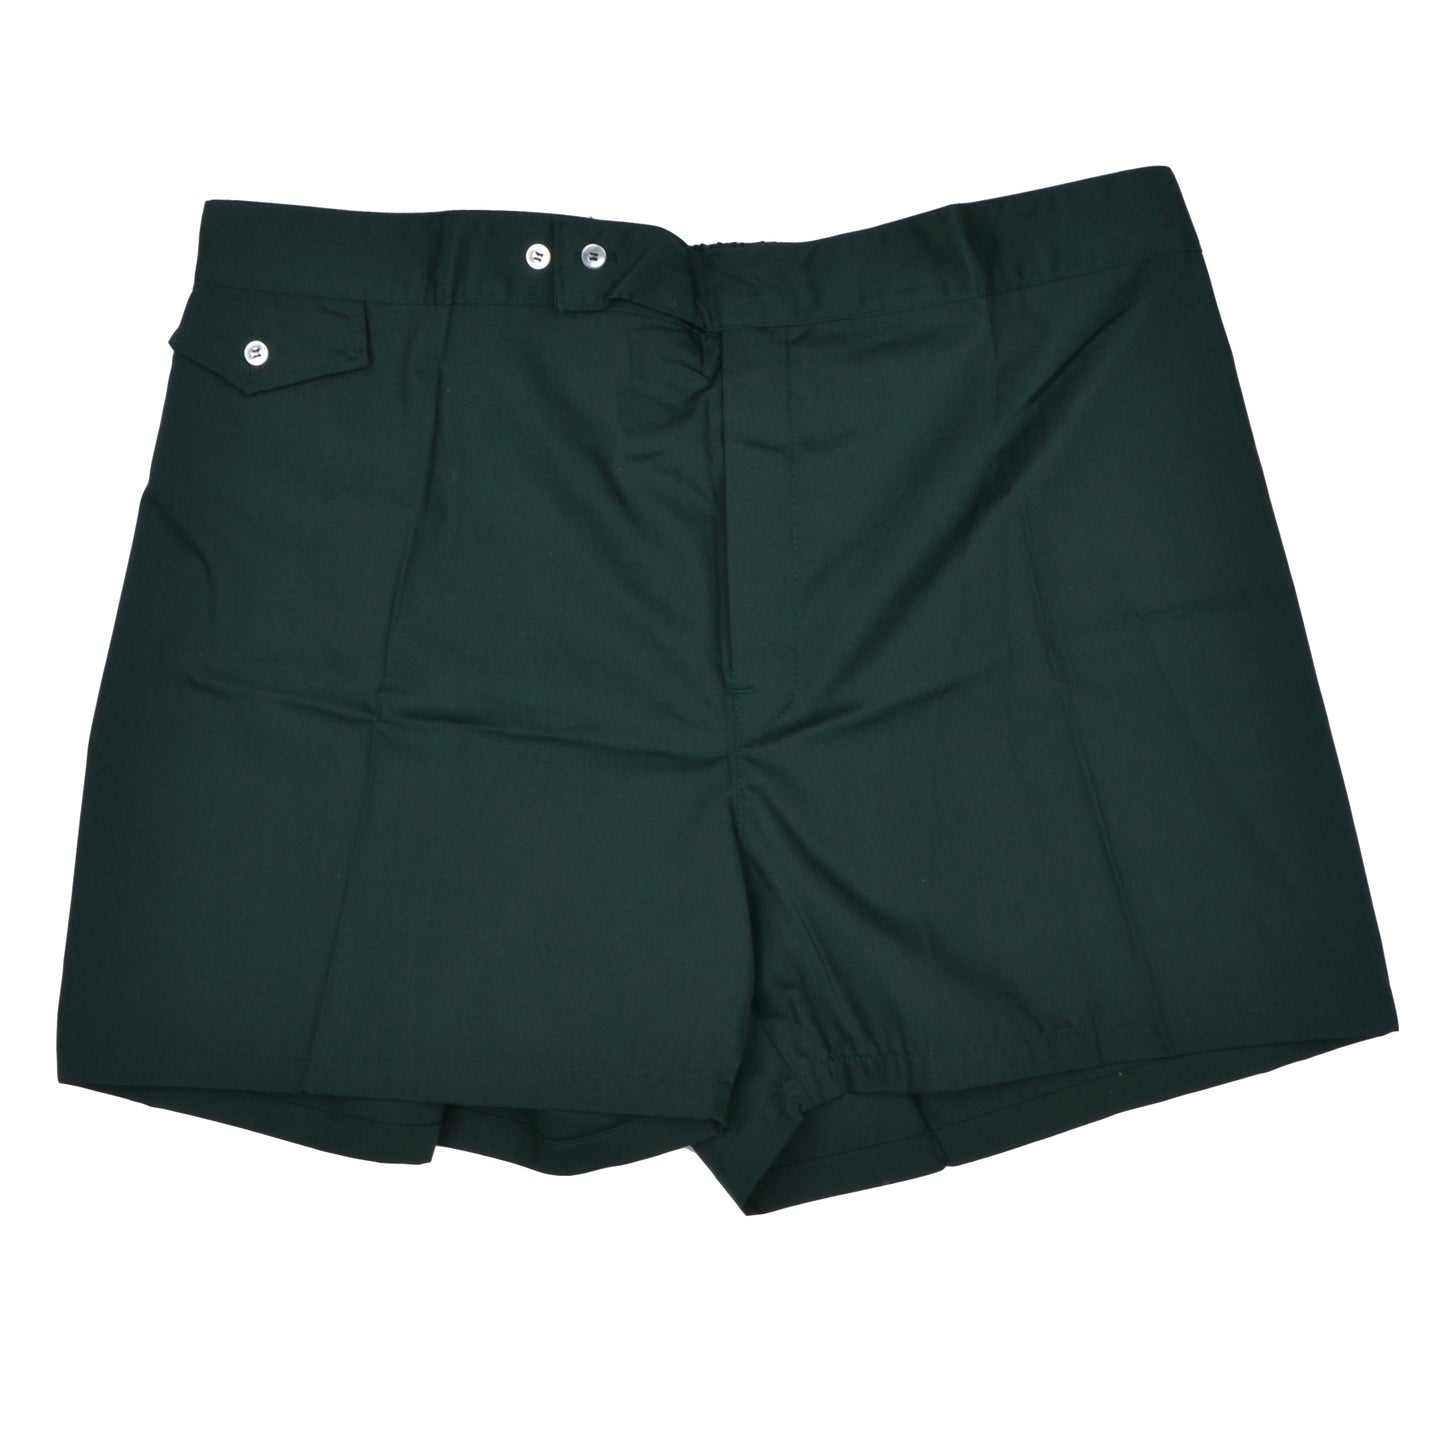 Vintage NOS Swim Shorts Size XL - Dark Green